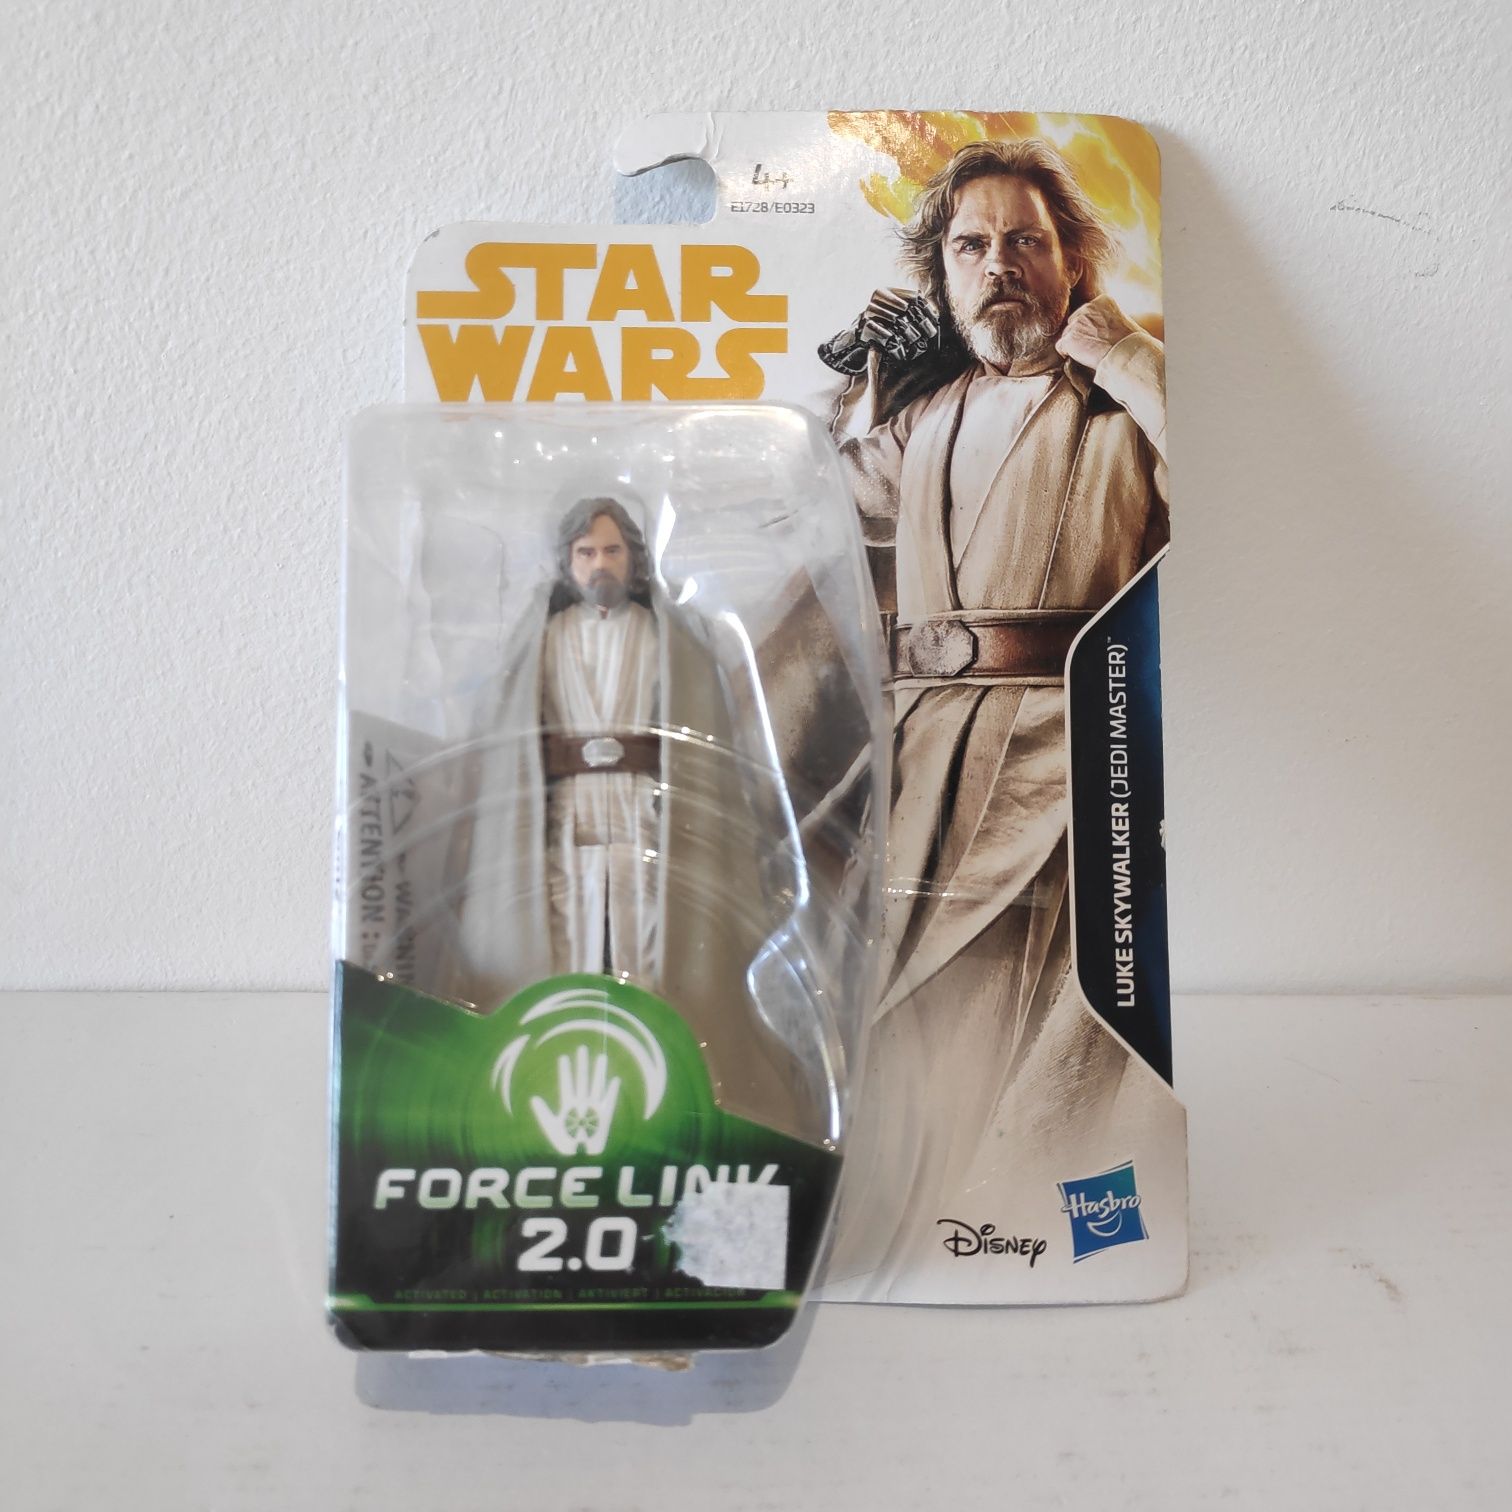 Star wars - Luke Skywalker, Force Link